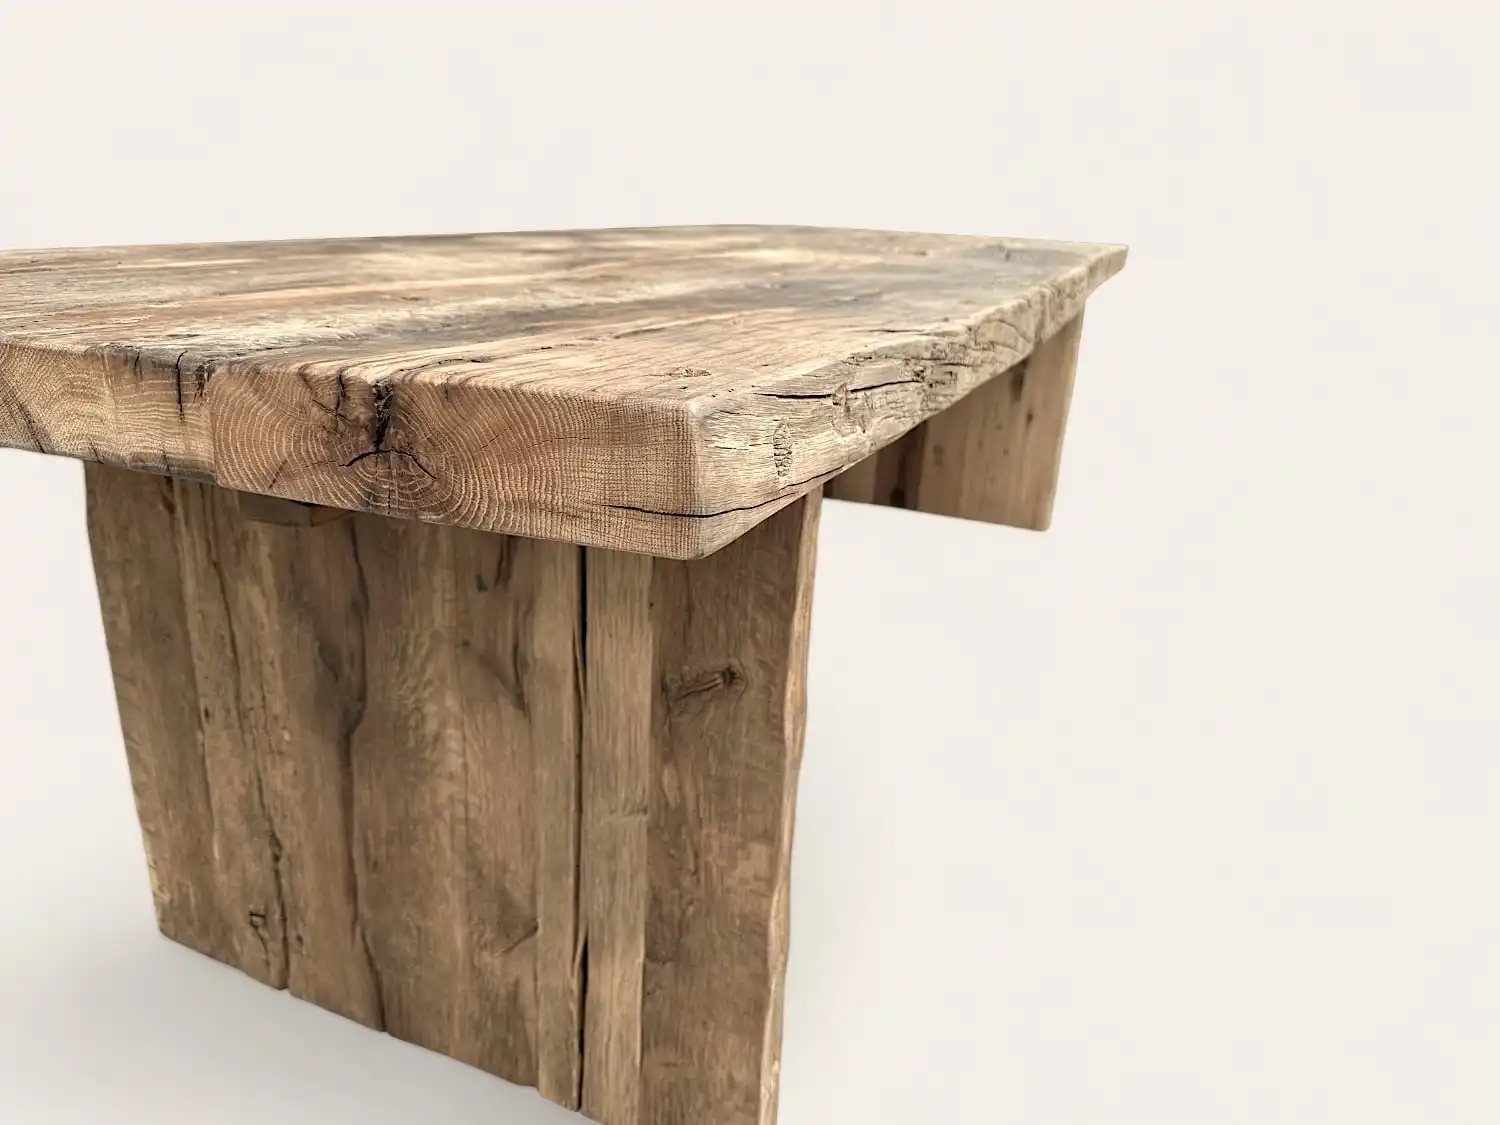  Une table rustique en bois en forme de triangle. 